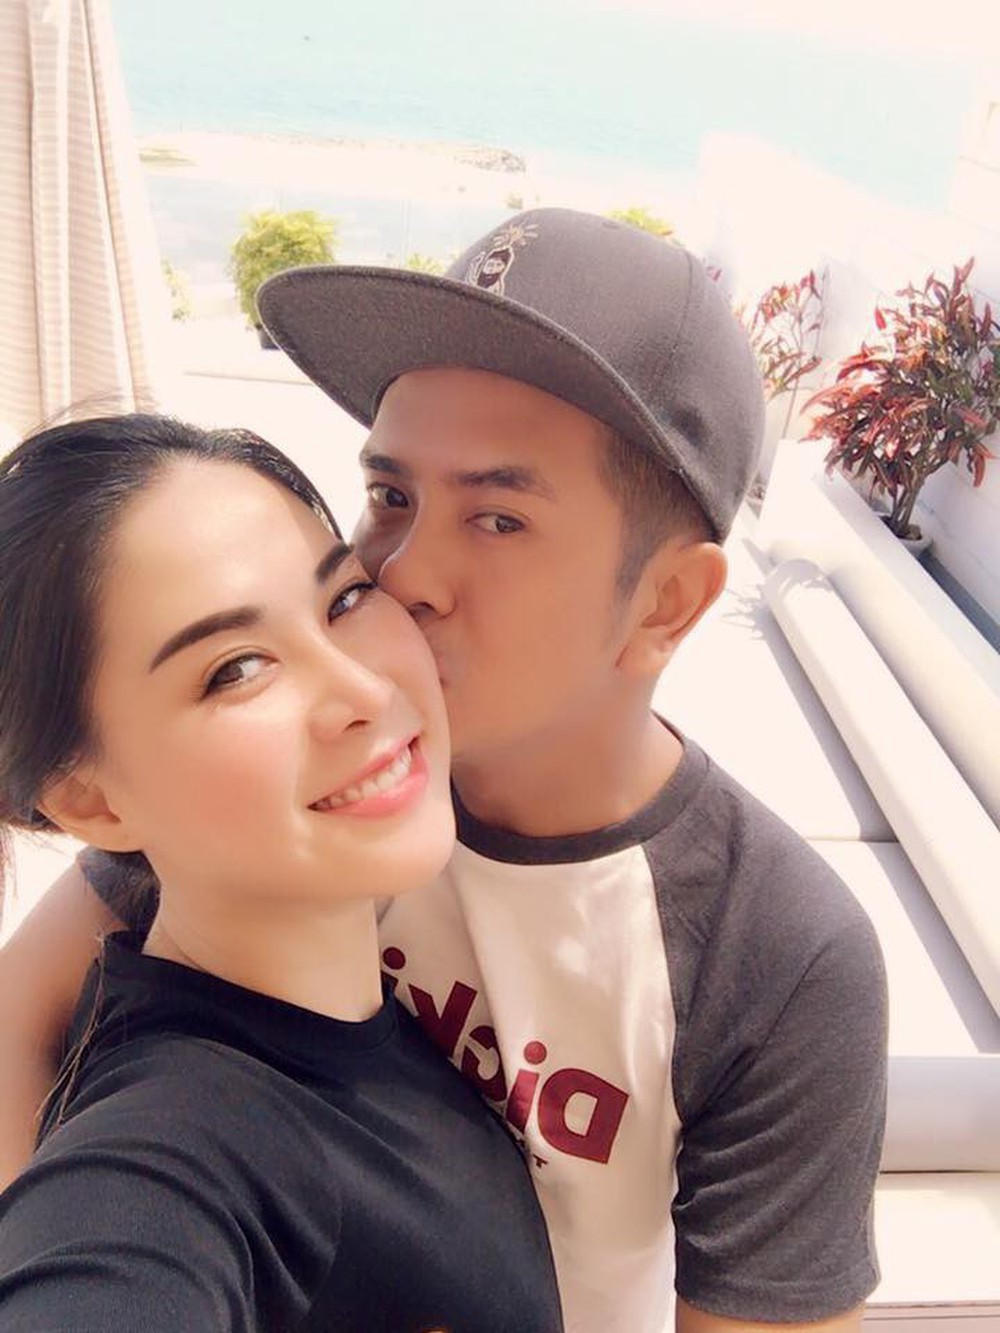 Hùng Thuận “Đất phương nam” công khai gọi bạn gái DJ là bà xã sau hơn 1 năm thừa nhận chuyện tình cảm - Ảnh 2.